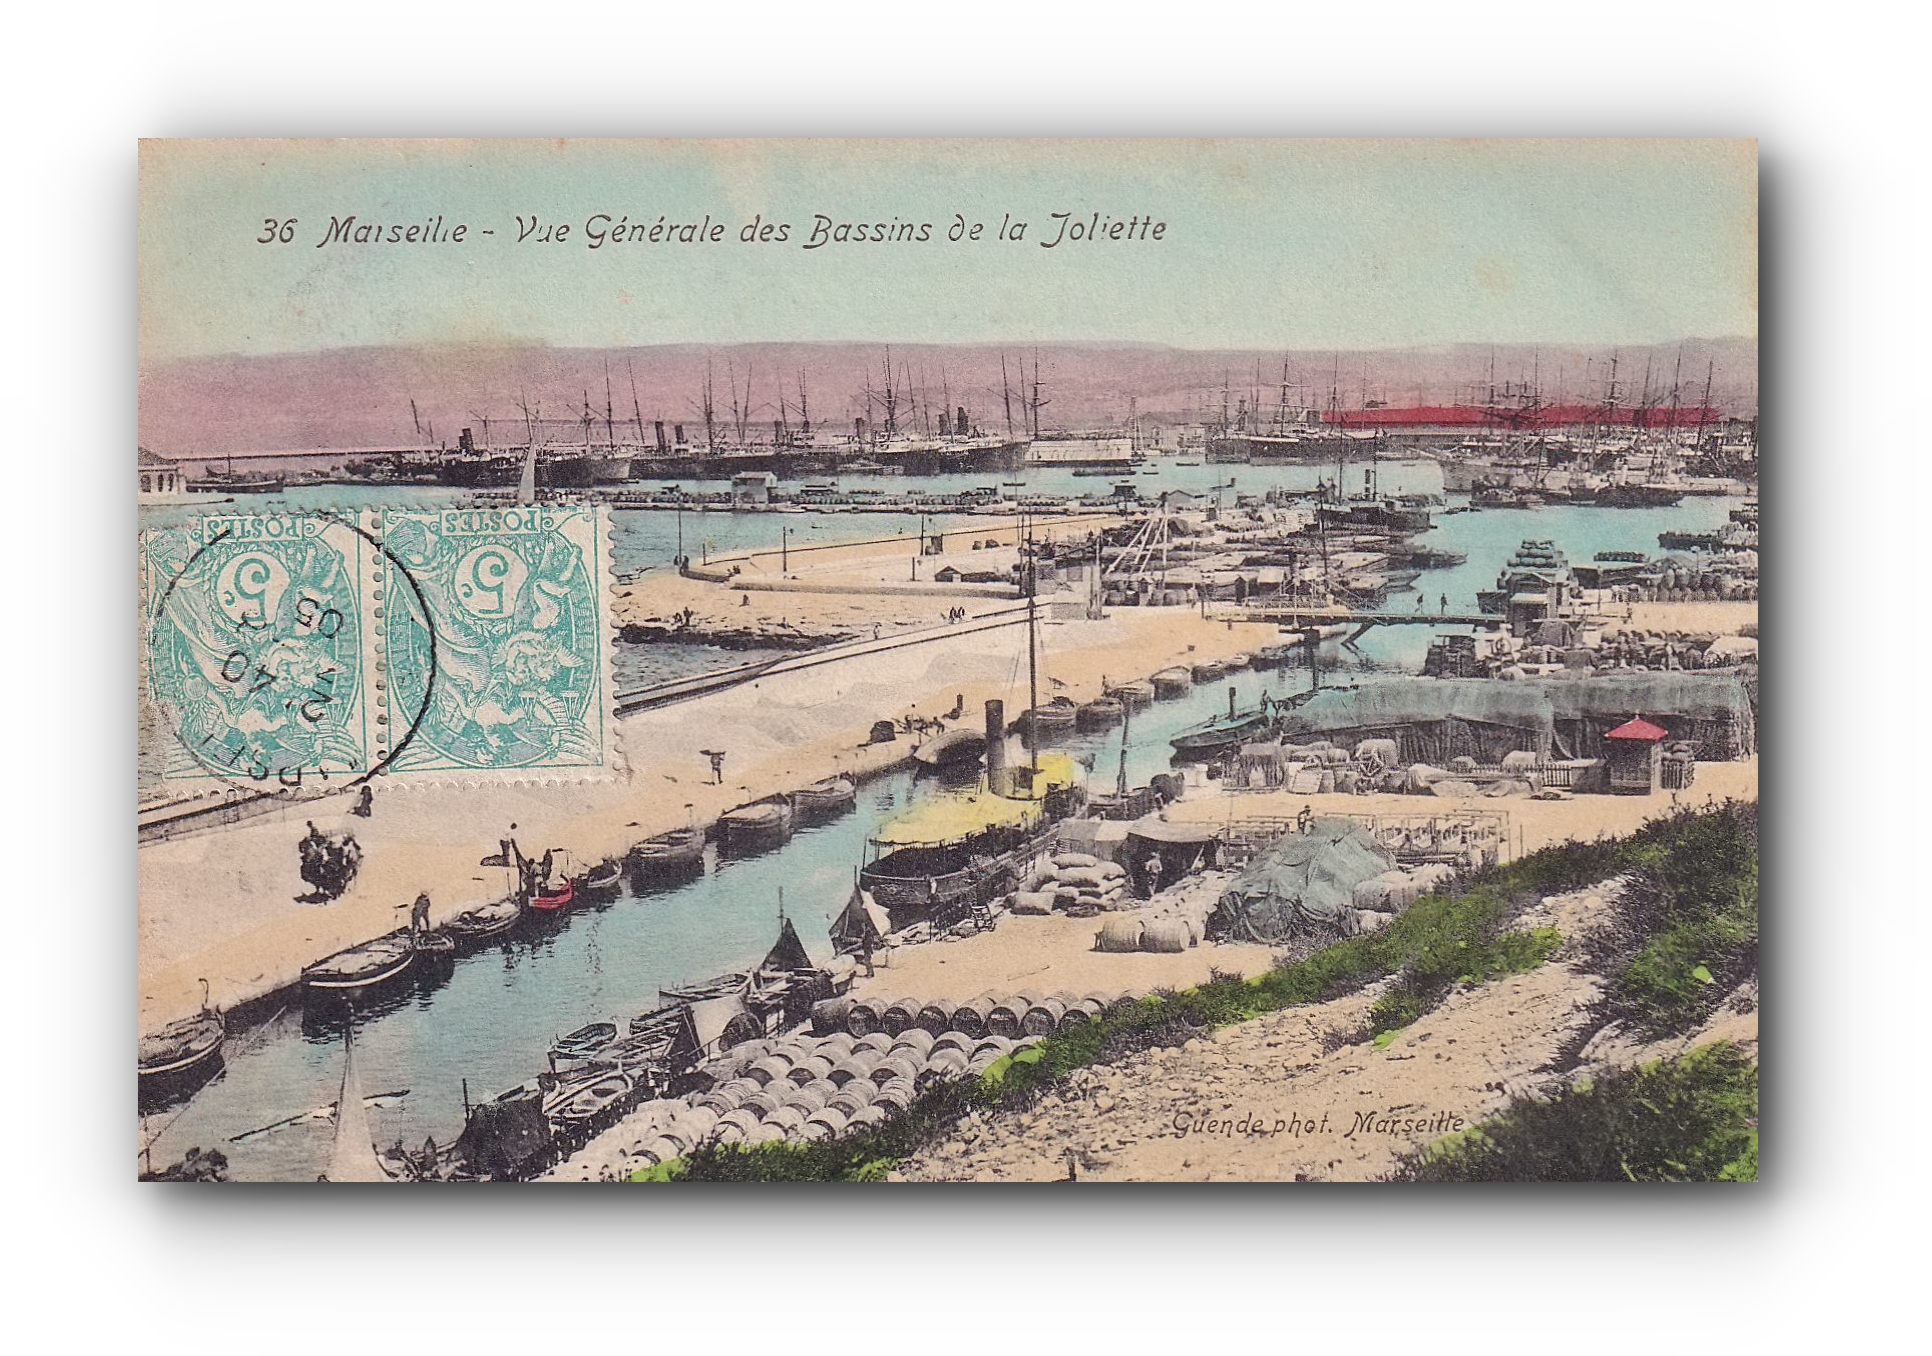 - Vue Générale des Bassins de la Joliette - MARSEILLE - 1905 -